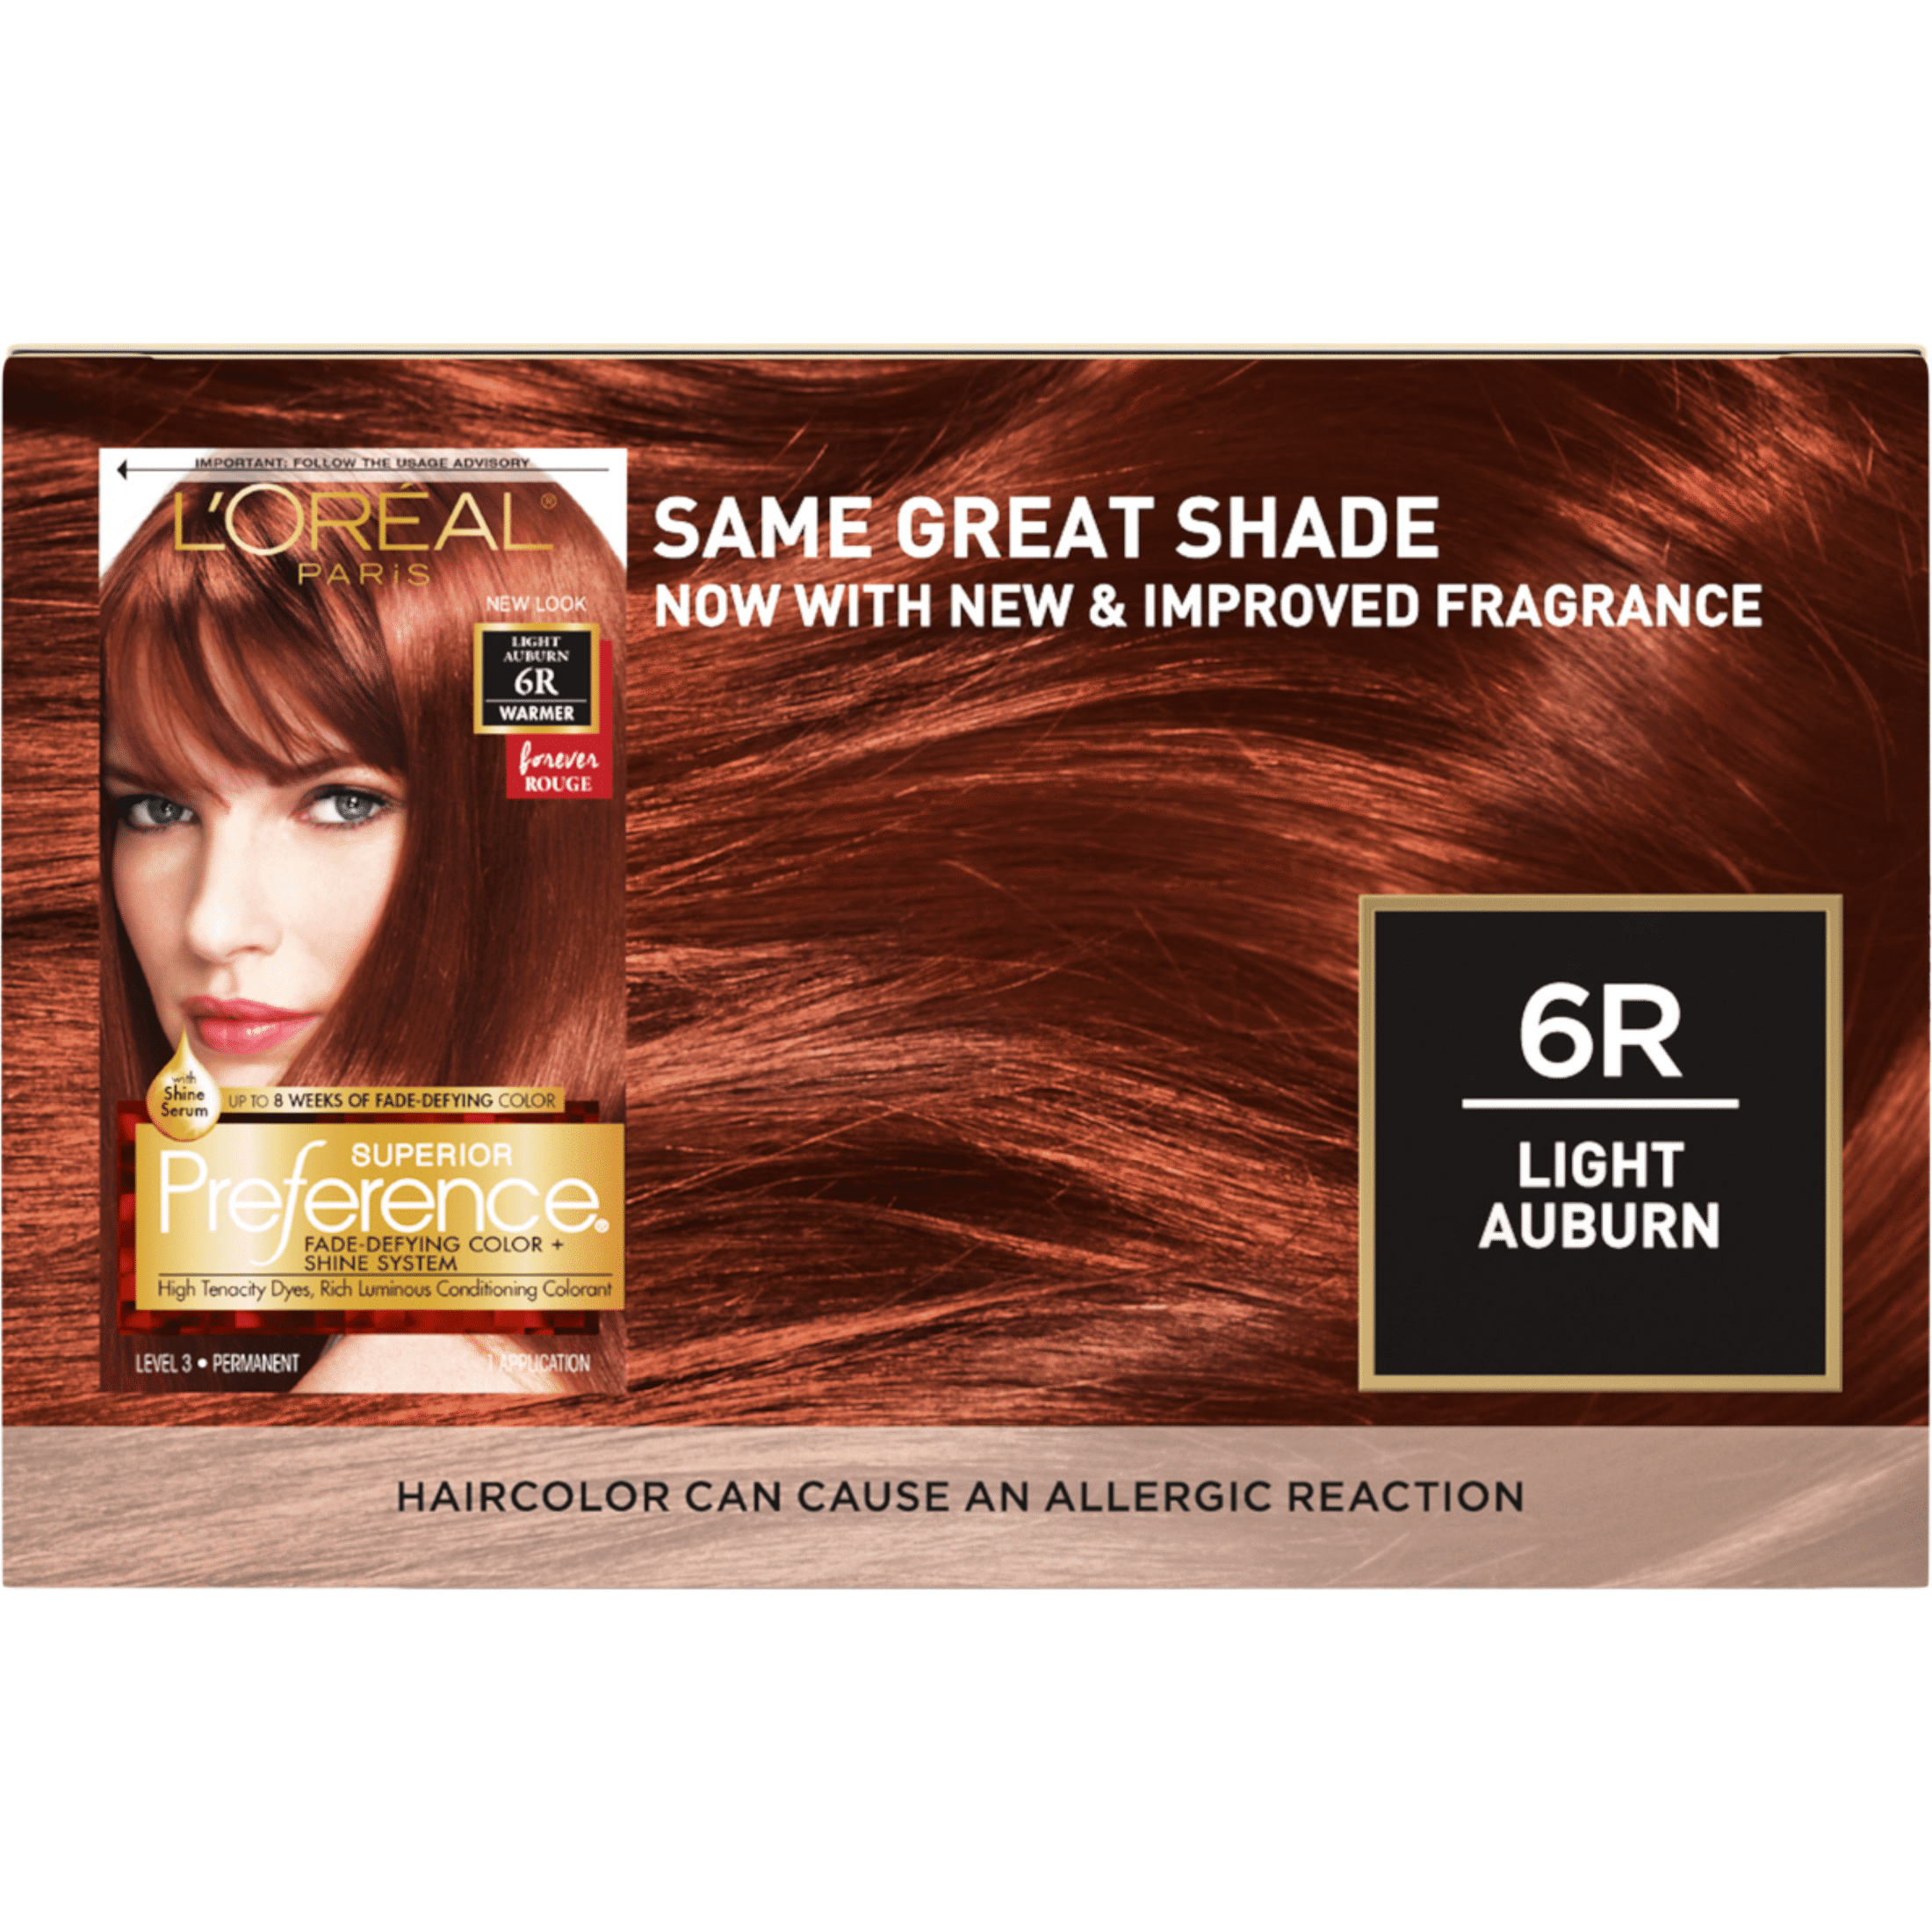 Paris Superior Preference Permanent Hair Color, 6R Light Auburn - Walmart.com